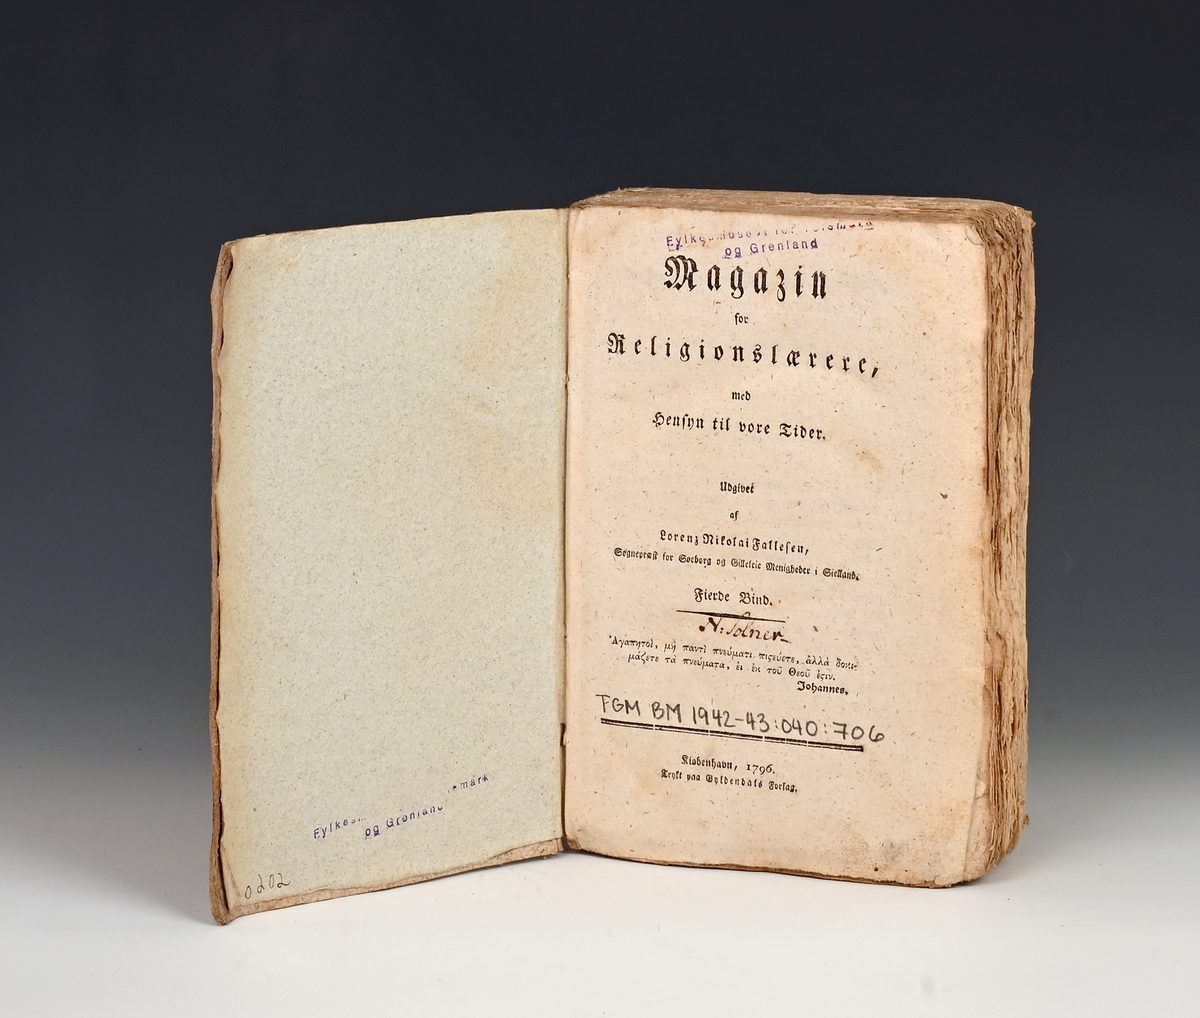 Fallesen, Lorenz Nikolai. Magasin for religionslærere med hensyn til vore Tider. Fjerde bind. Kbvh. 1796